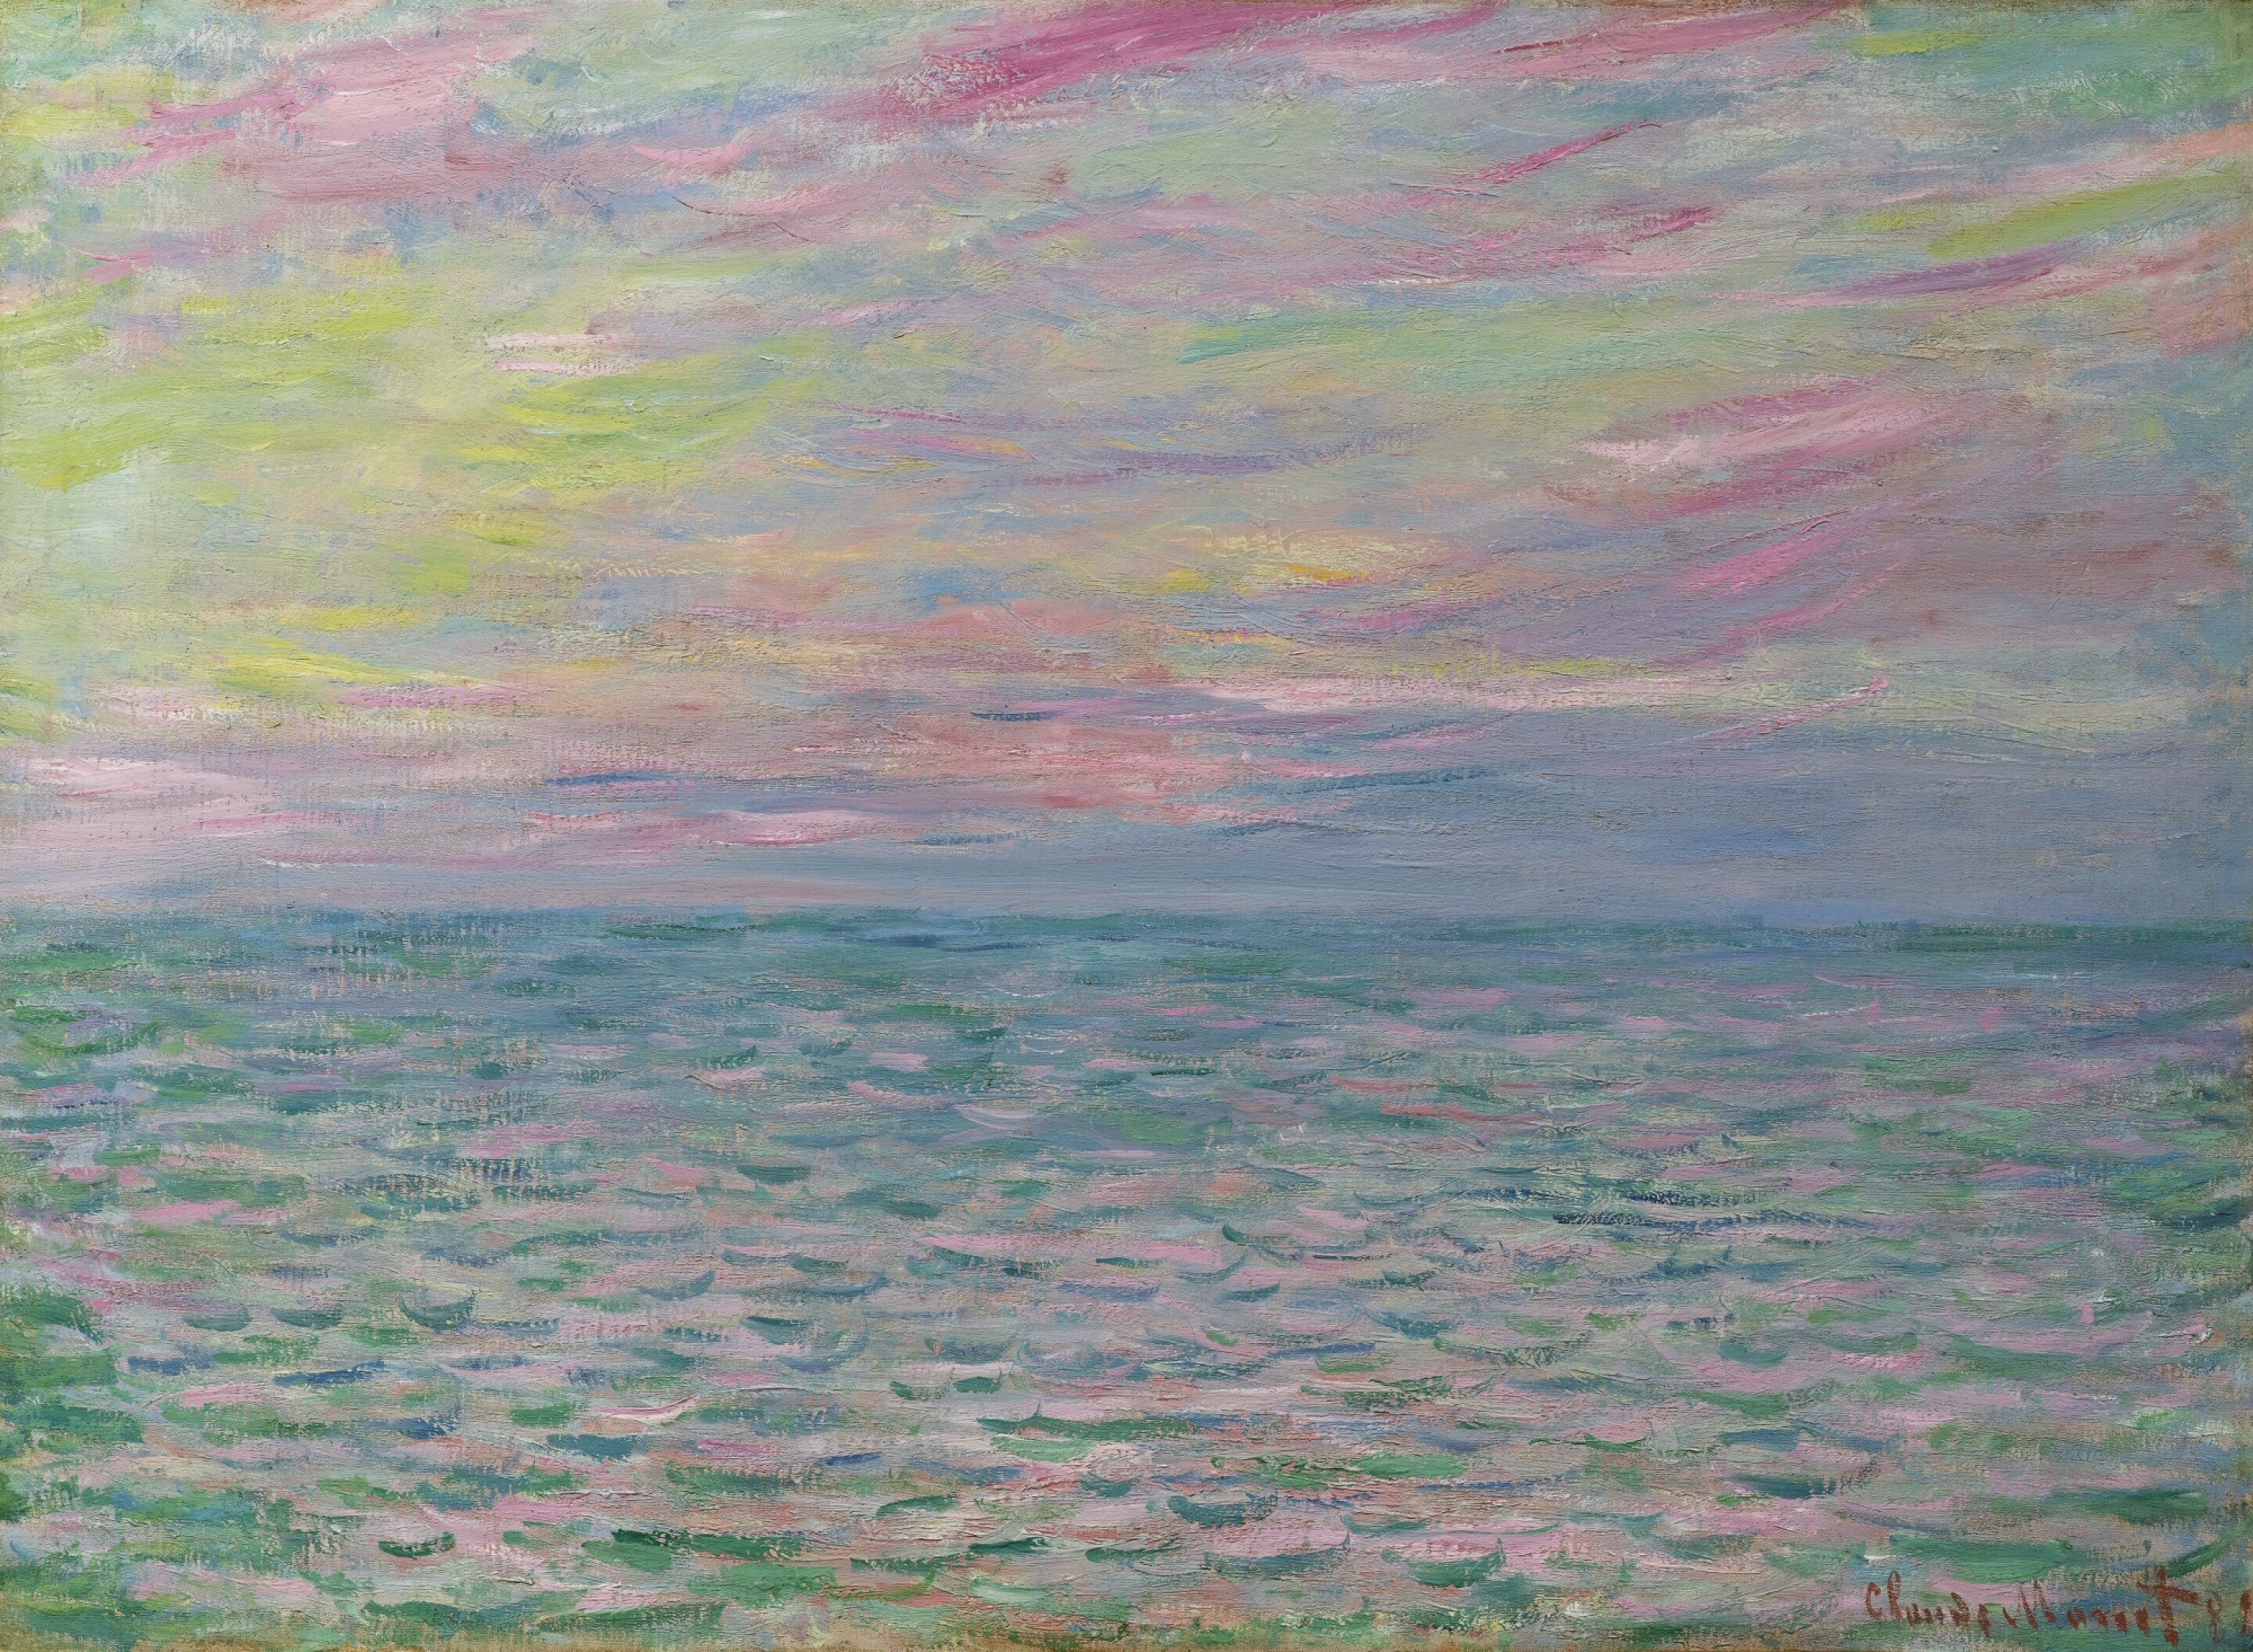 Pôr do sol em Pourville, Mar aberto by Claude Monet - 1882 - 54 x 73,5 cm coleção privada